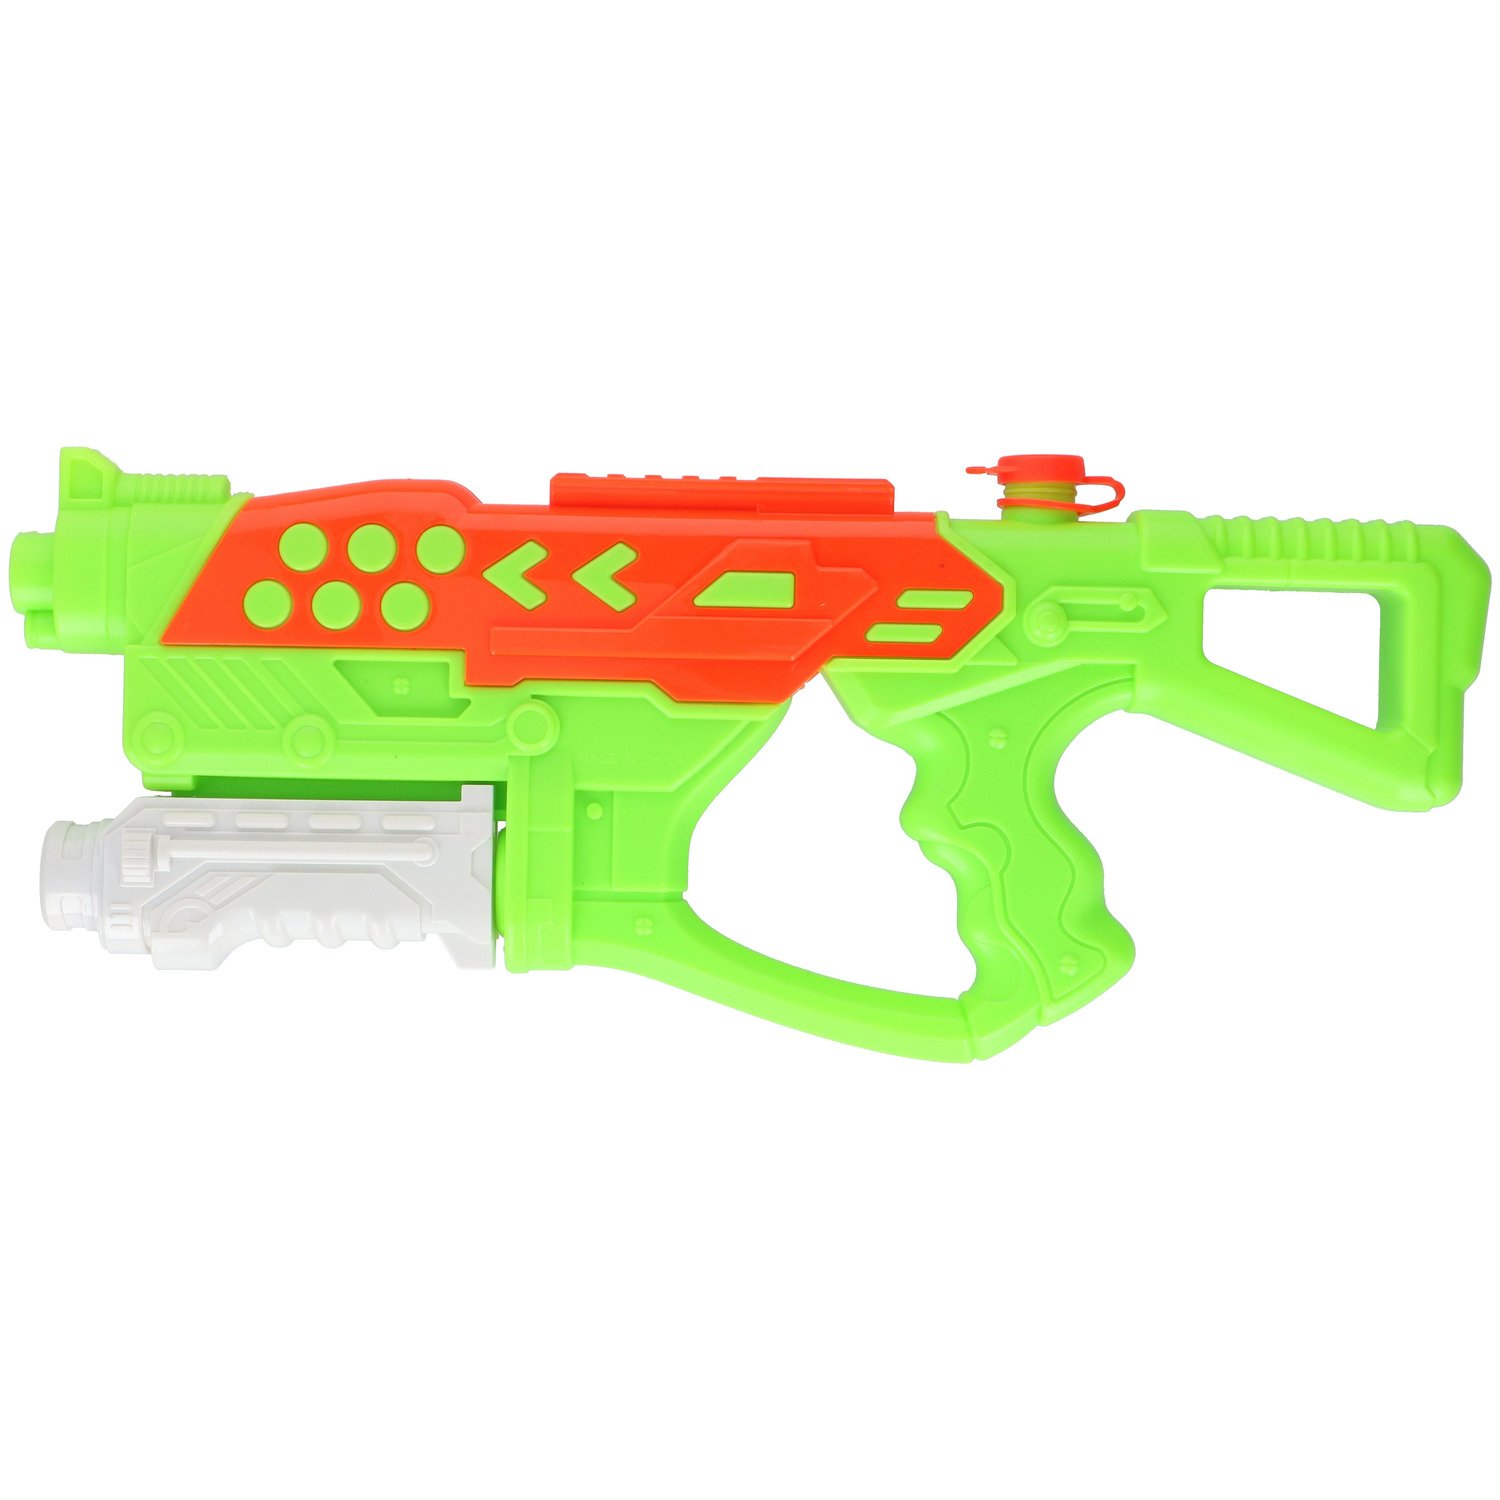 1x Waterpistolen/waterpistool van 42 cm kinderspeelgoed - waterspeelgoed van kunststof - Groen